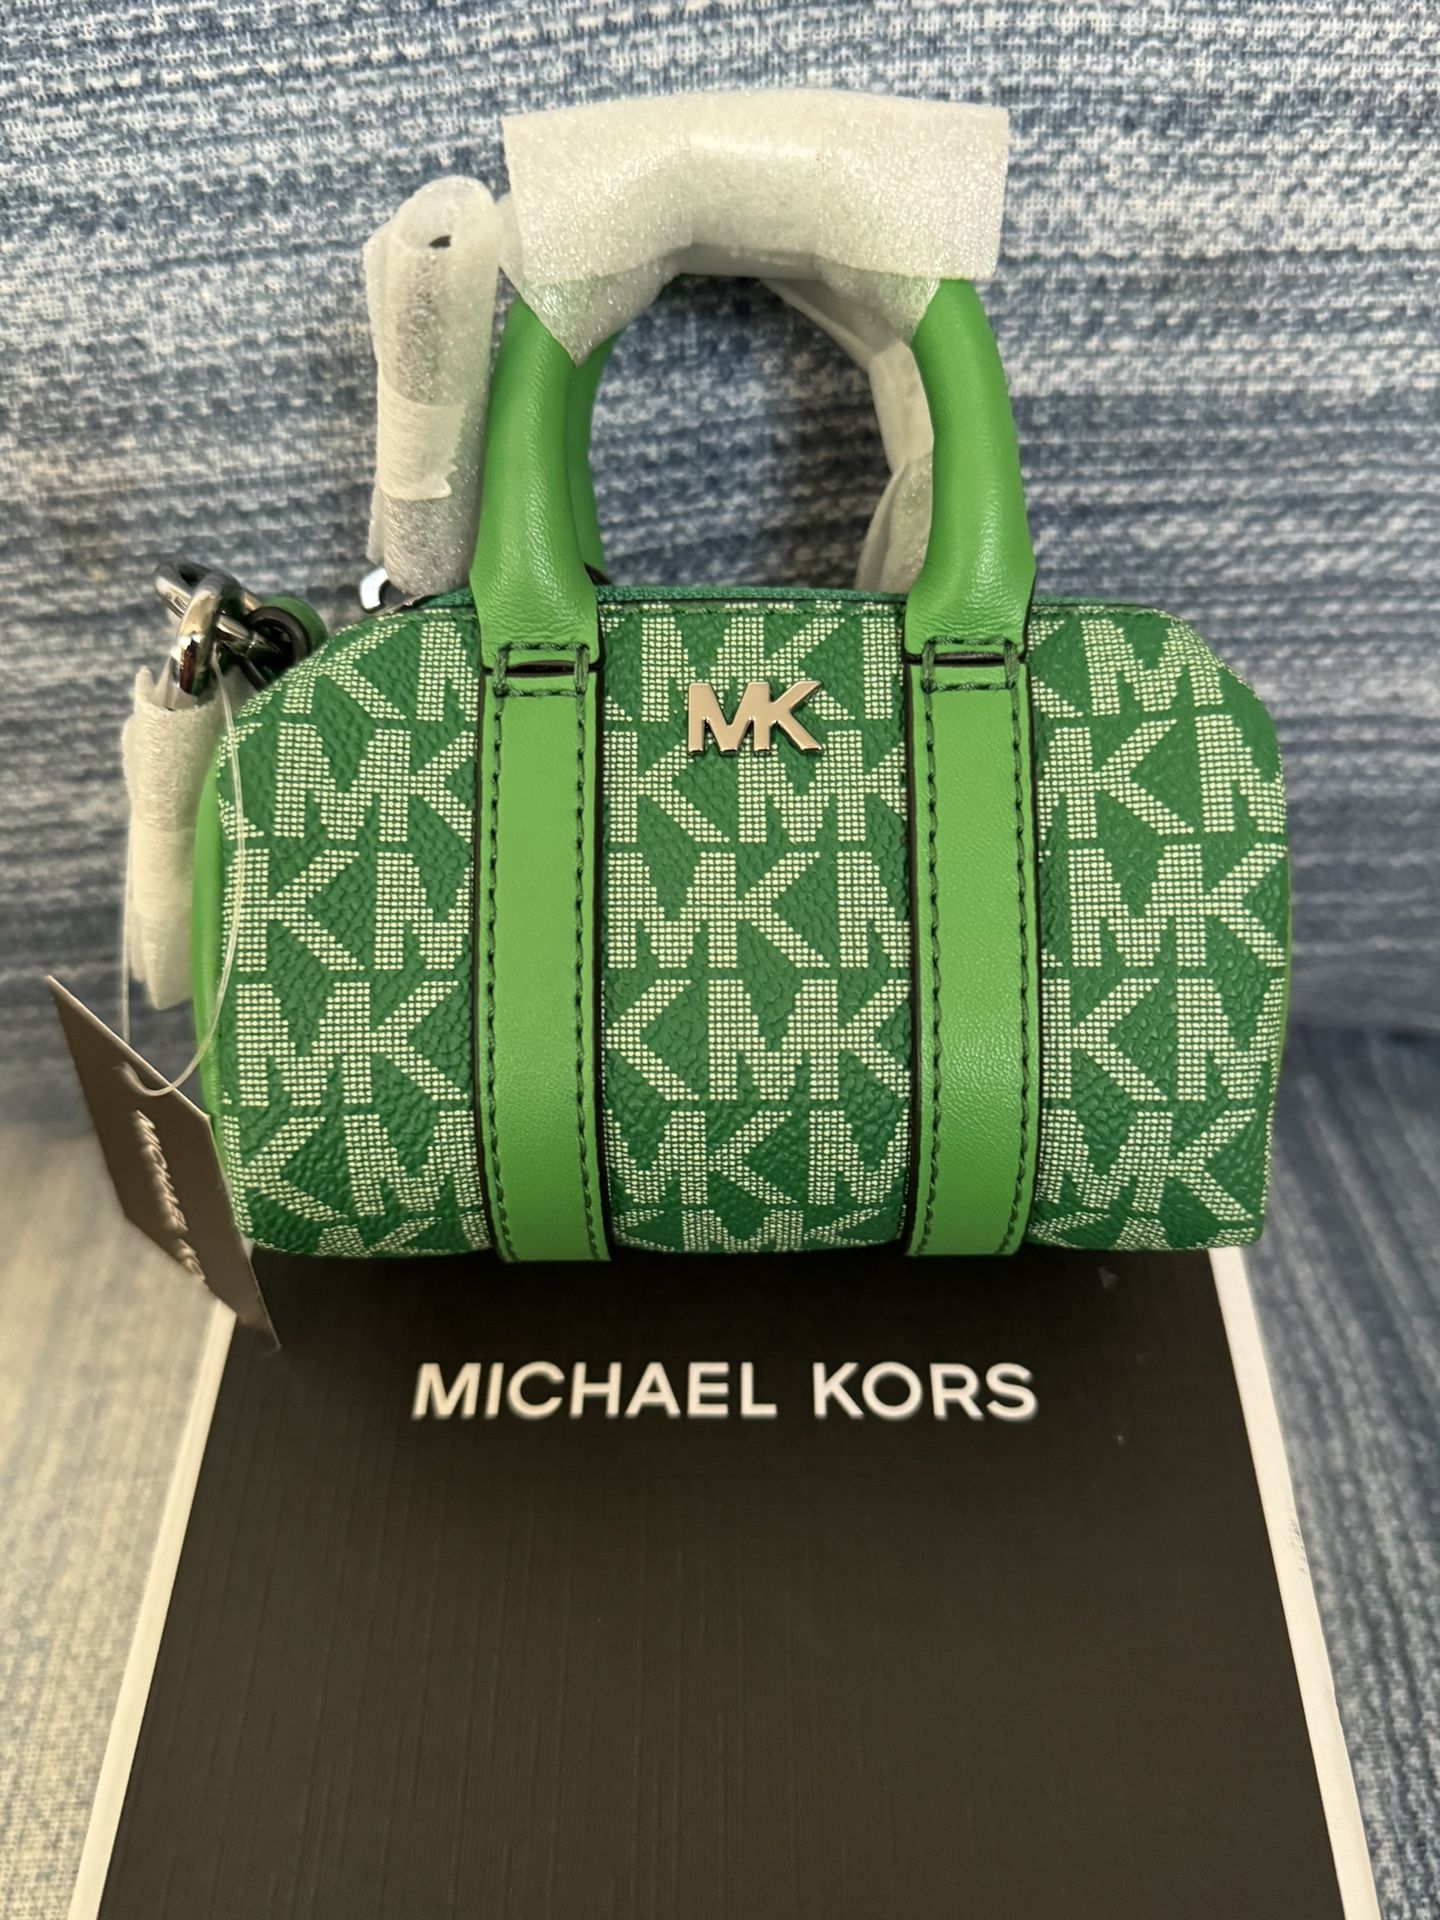 Michael Kors keychain bag